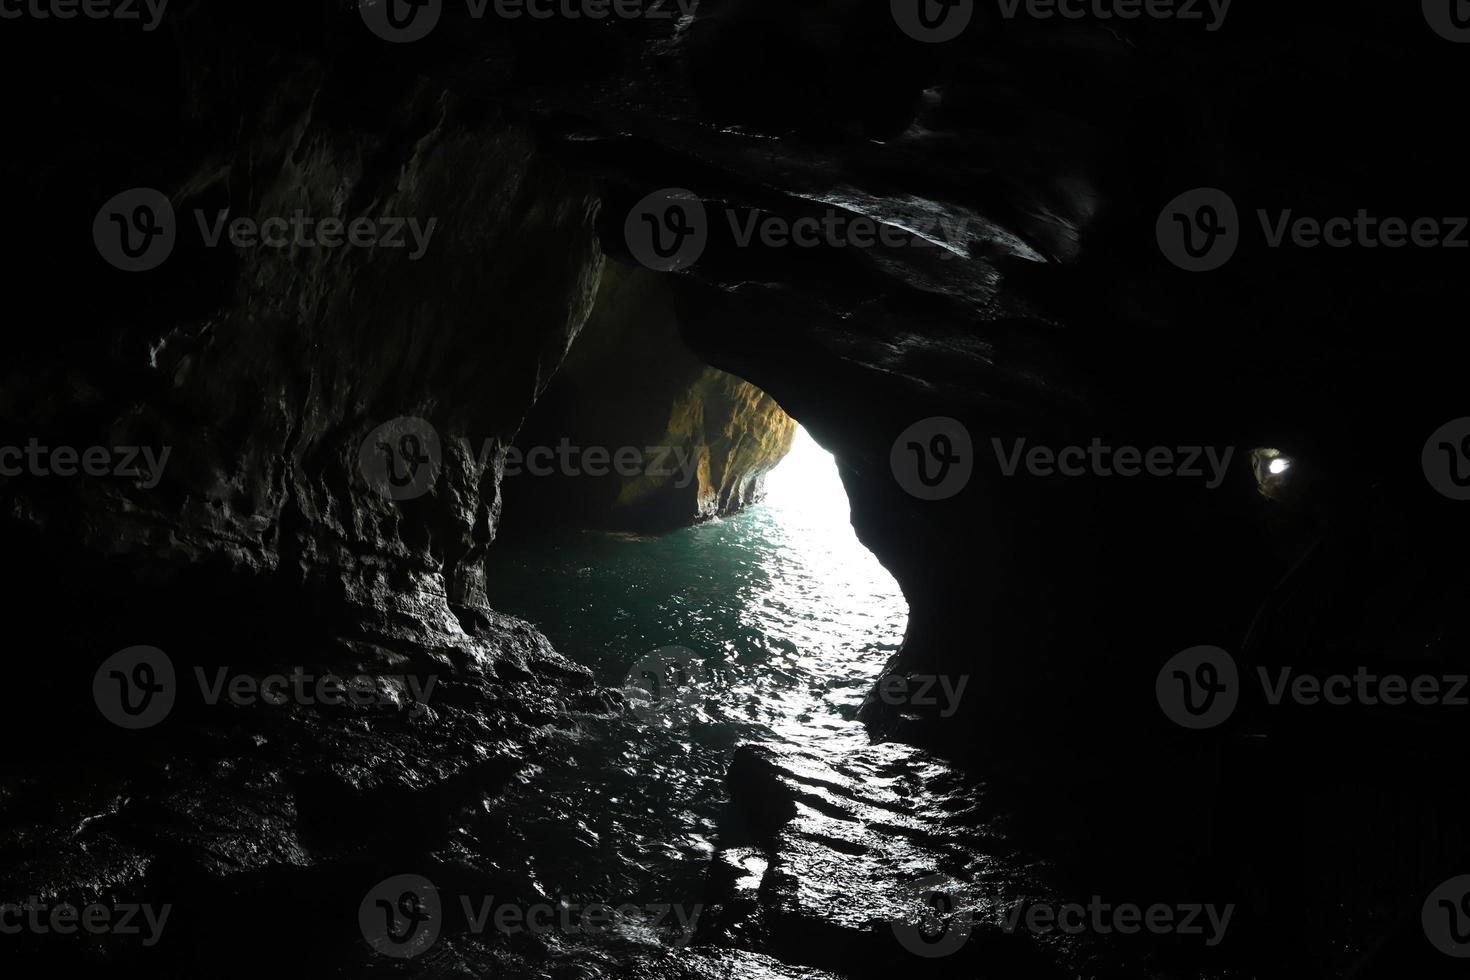 grutas nas falésias de giz nas margens do mar mediterrâneo. foto